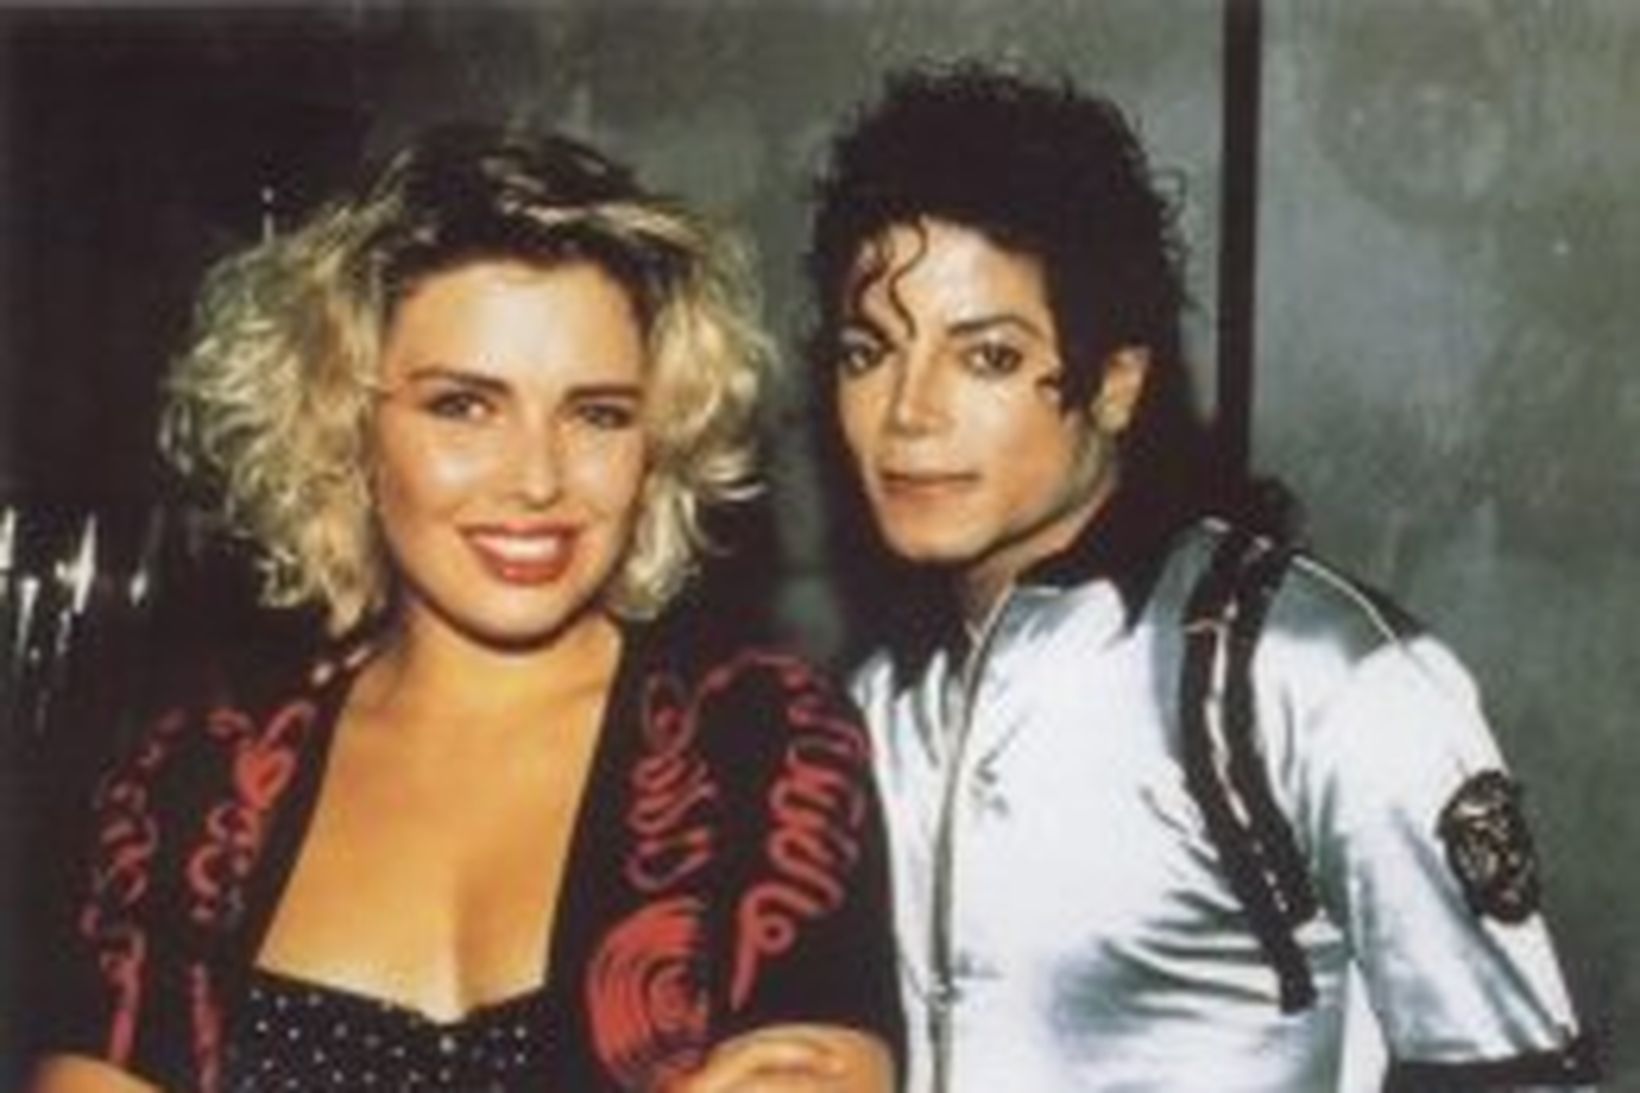 Kim Wilde ásamt Michael Jackson árið 1988.